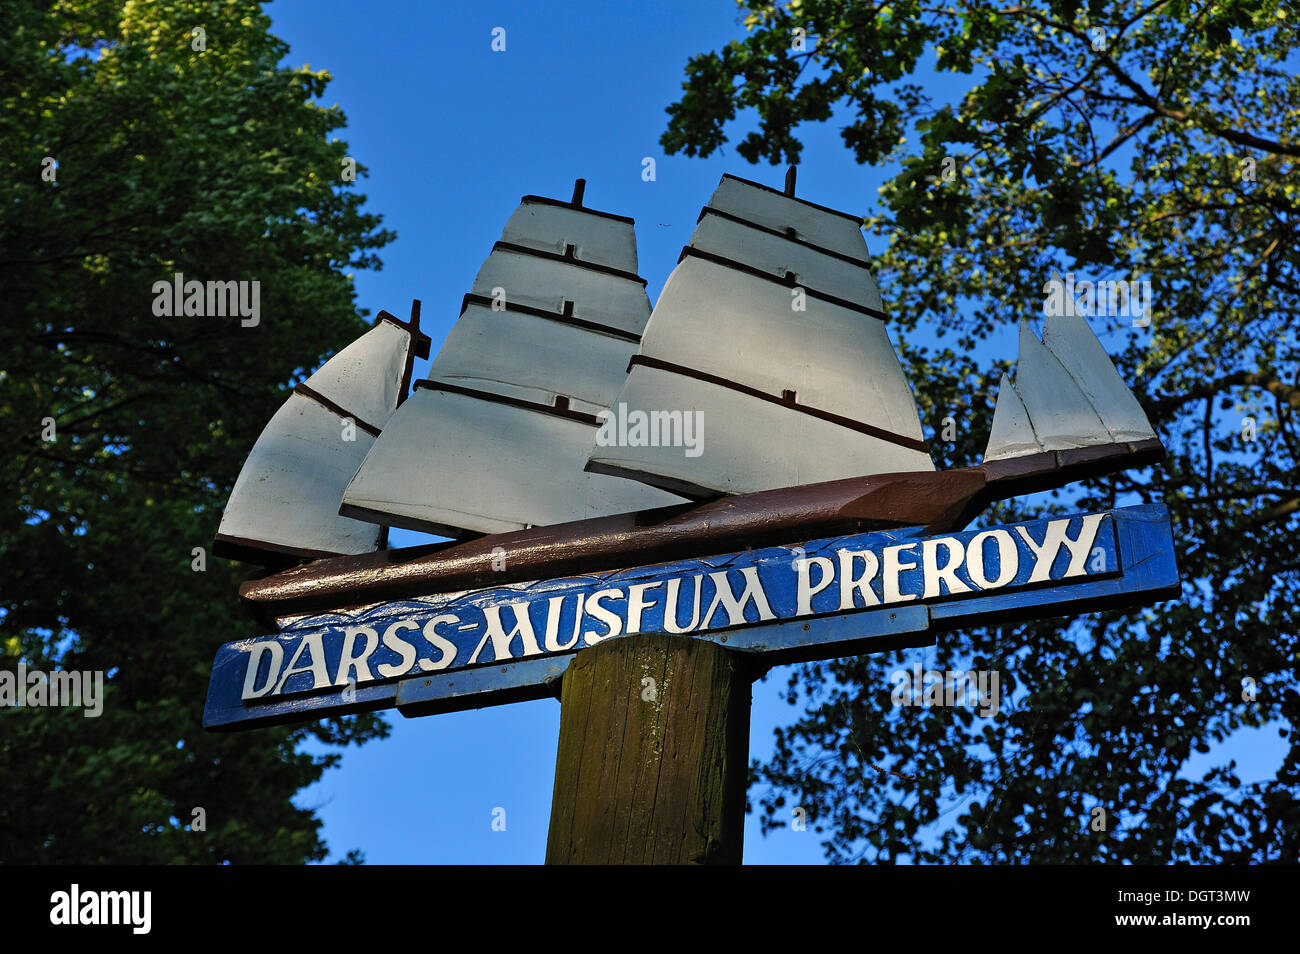 Panneau avec un 3-mâts barque, Darss Museum de Prerow, Darss, Mecklembourg-Poméranie-Occidentale Banque D'Images